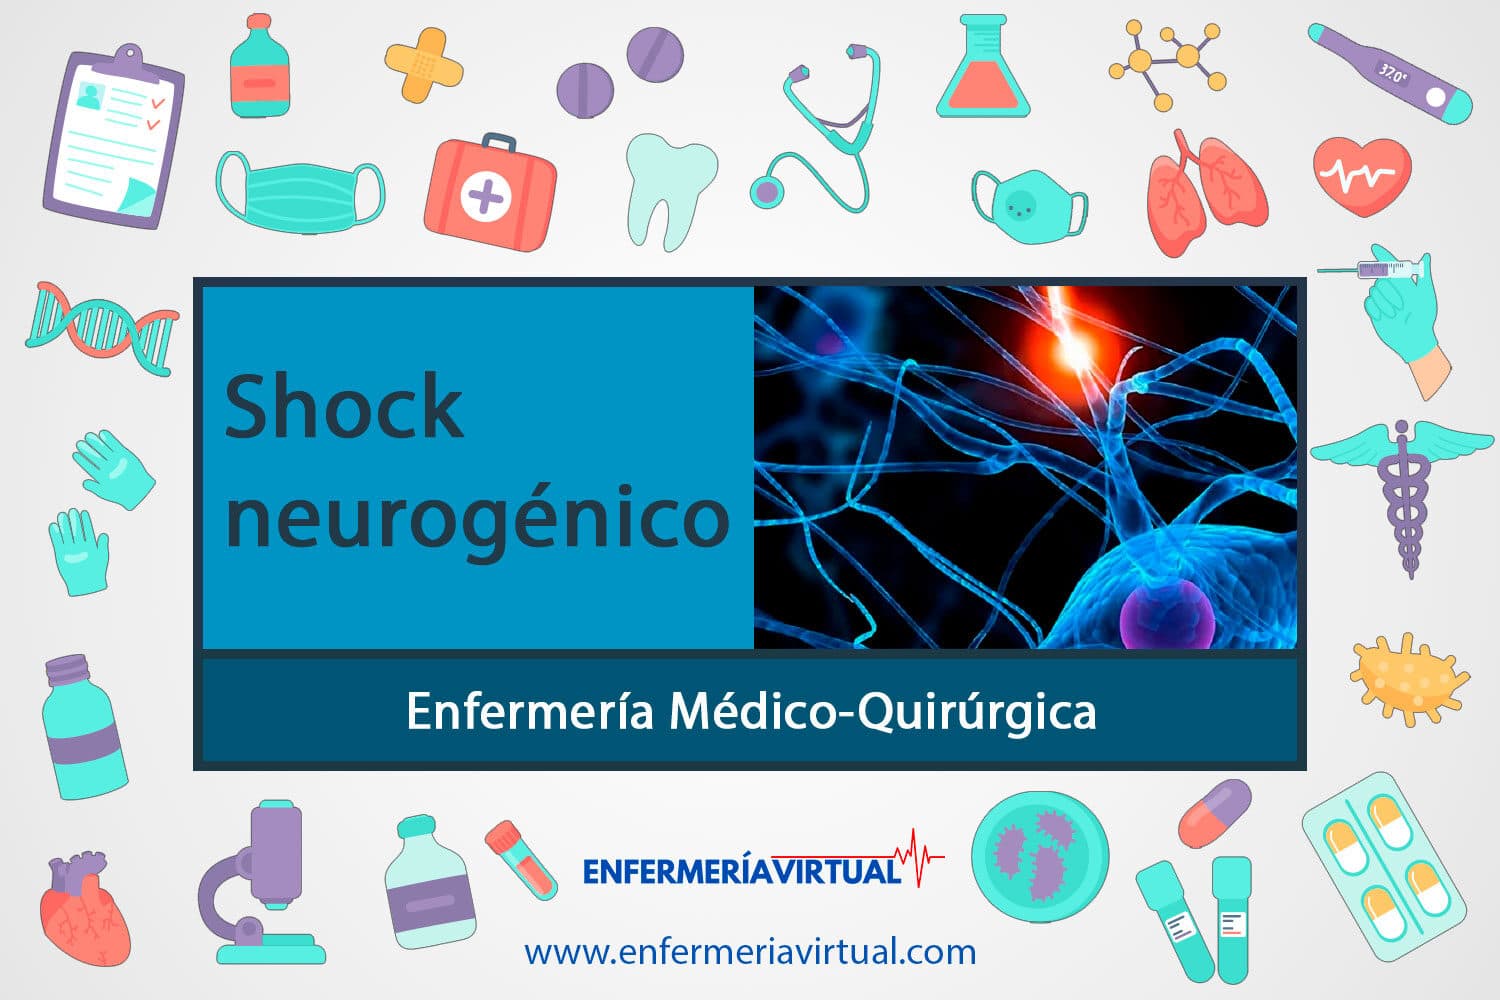 Shock neurogÃ©nico